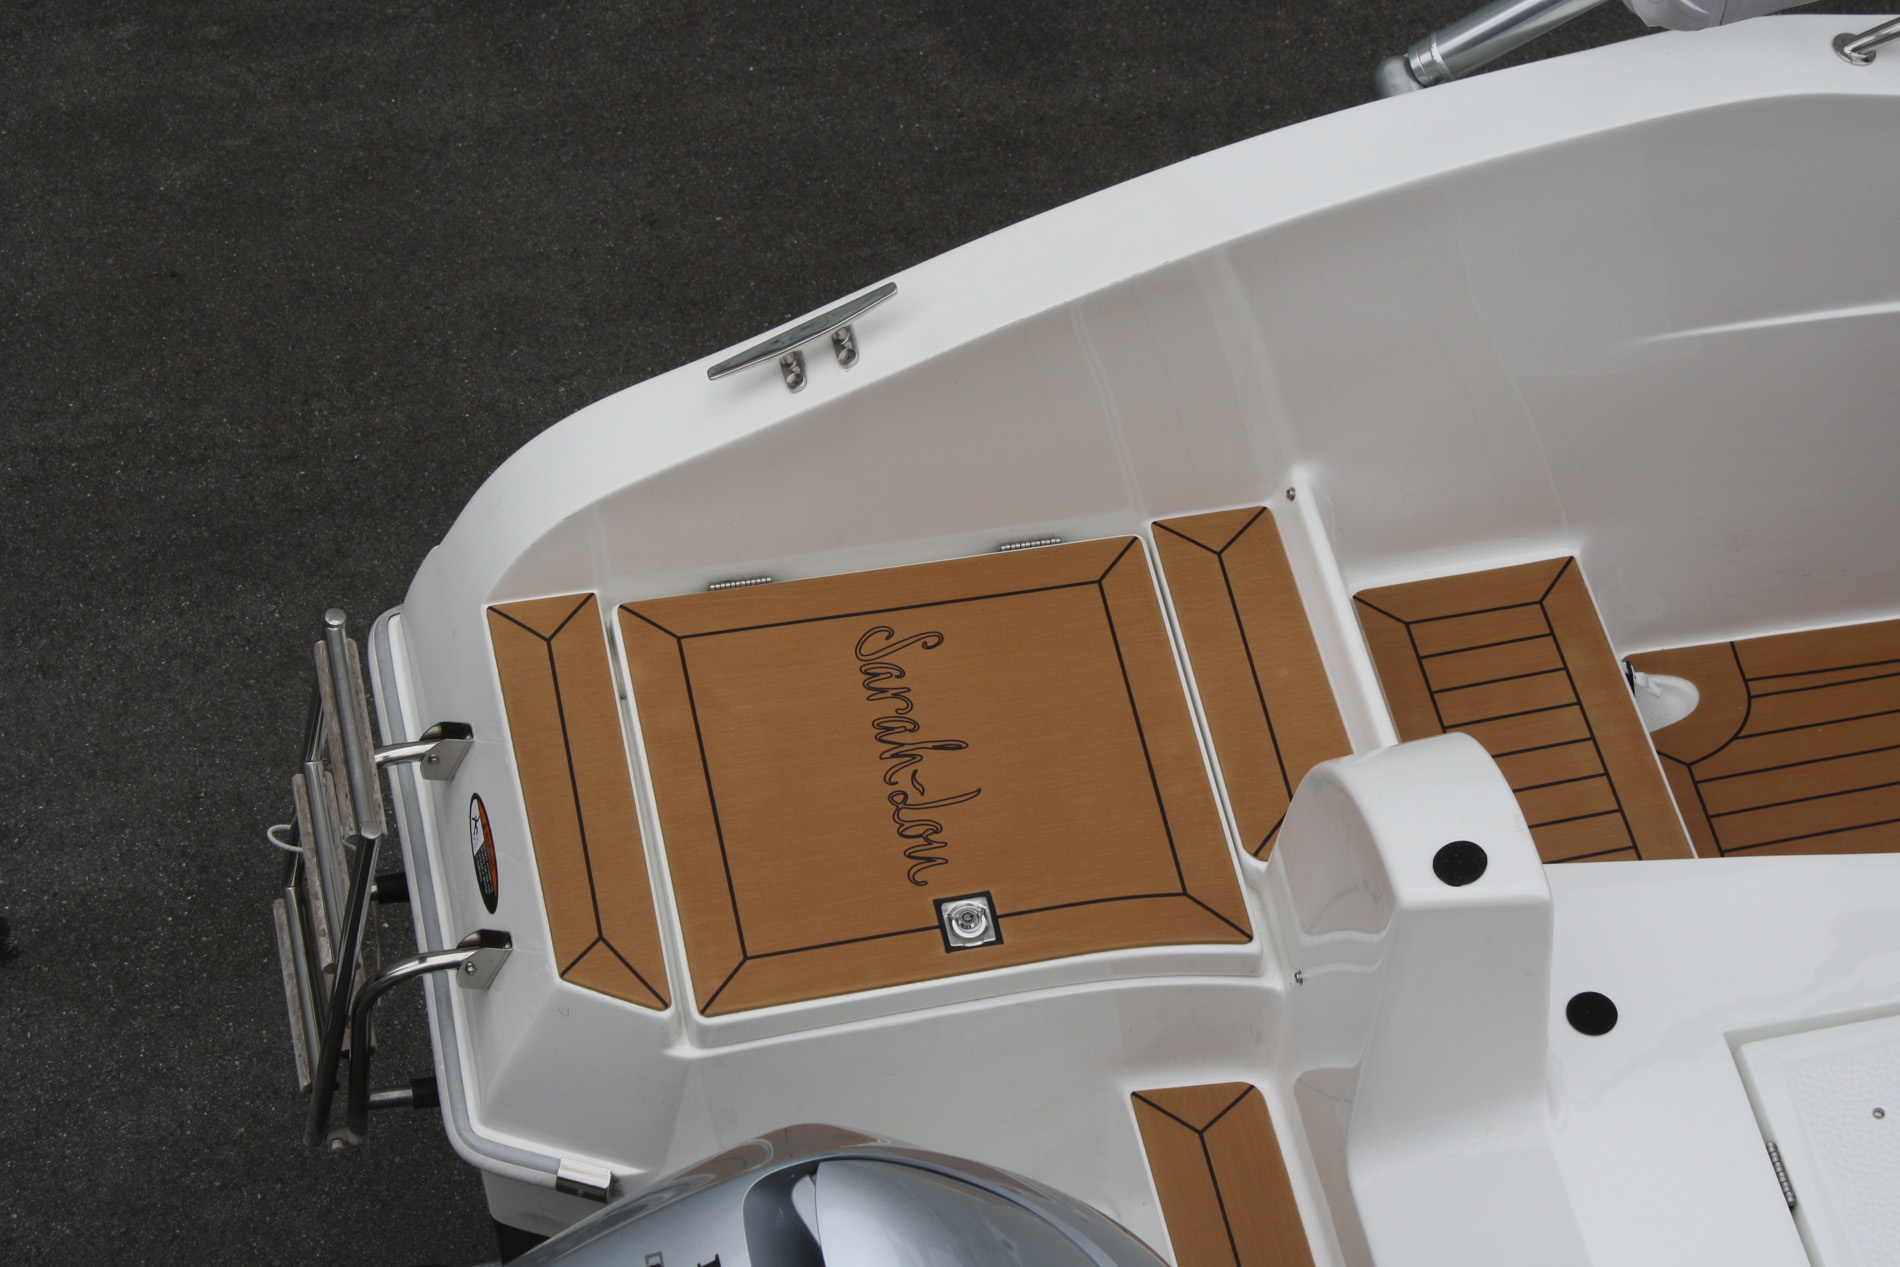 Decksbelag für Motorboote im Teak Holz Design